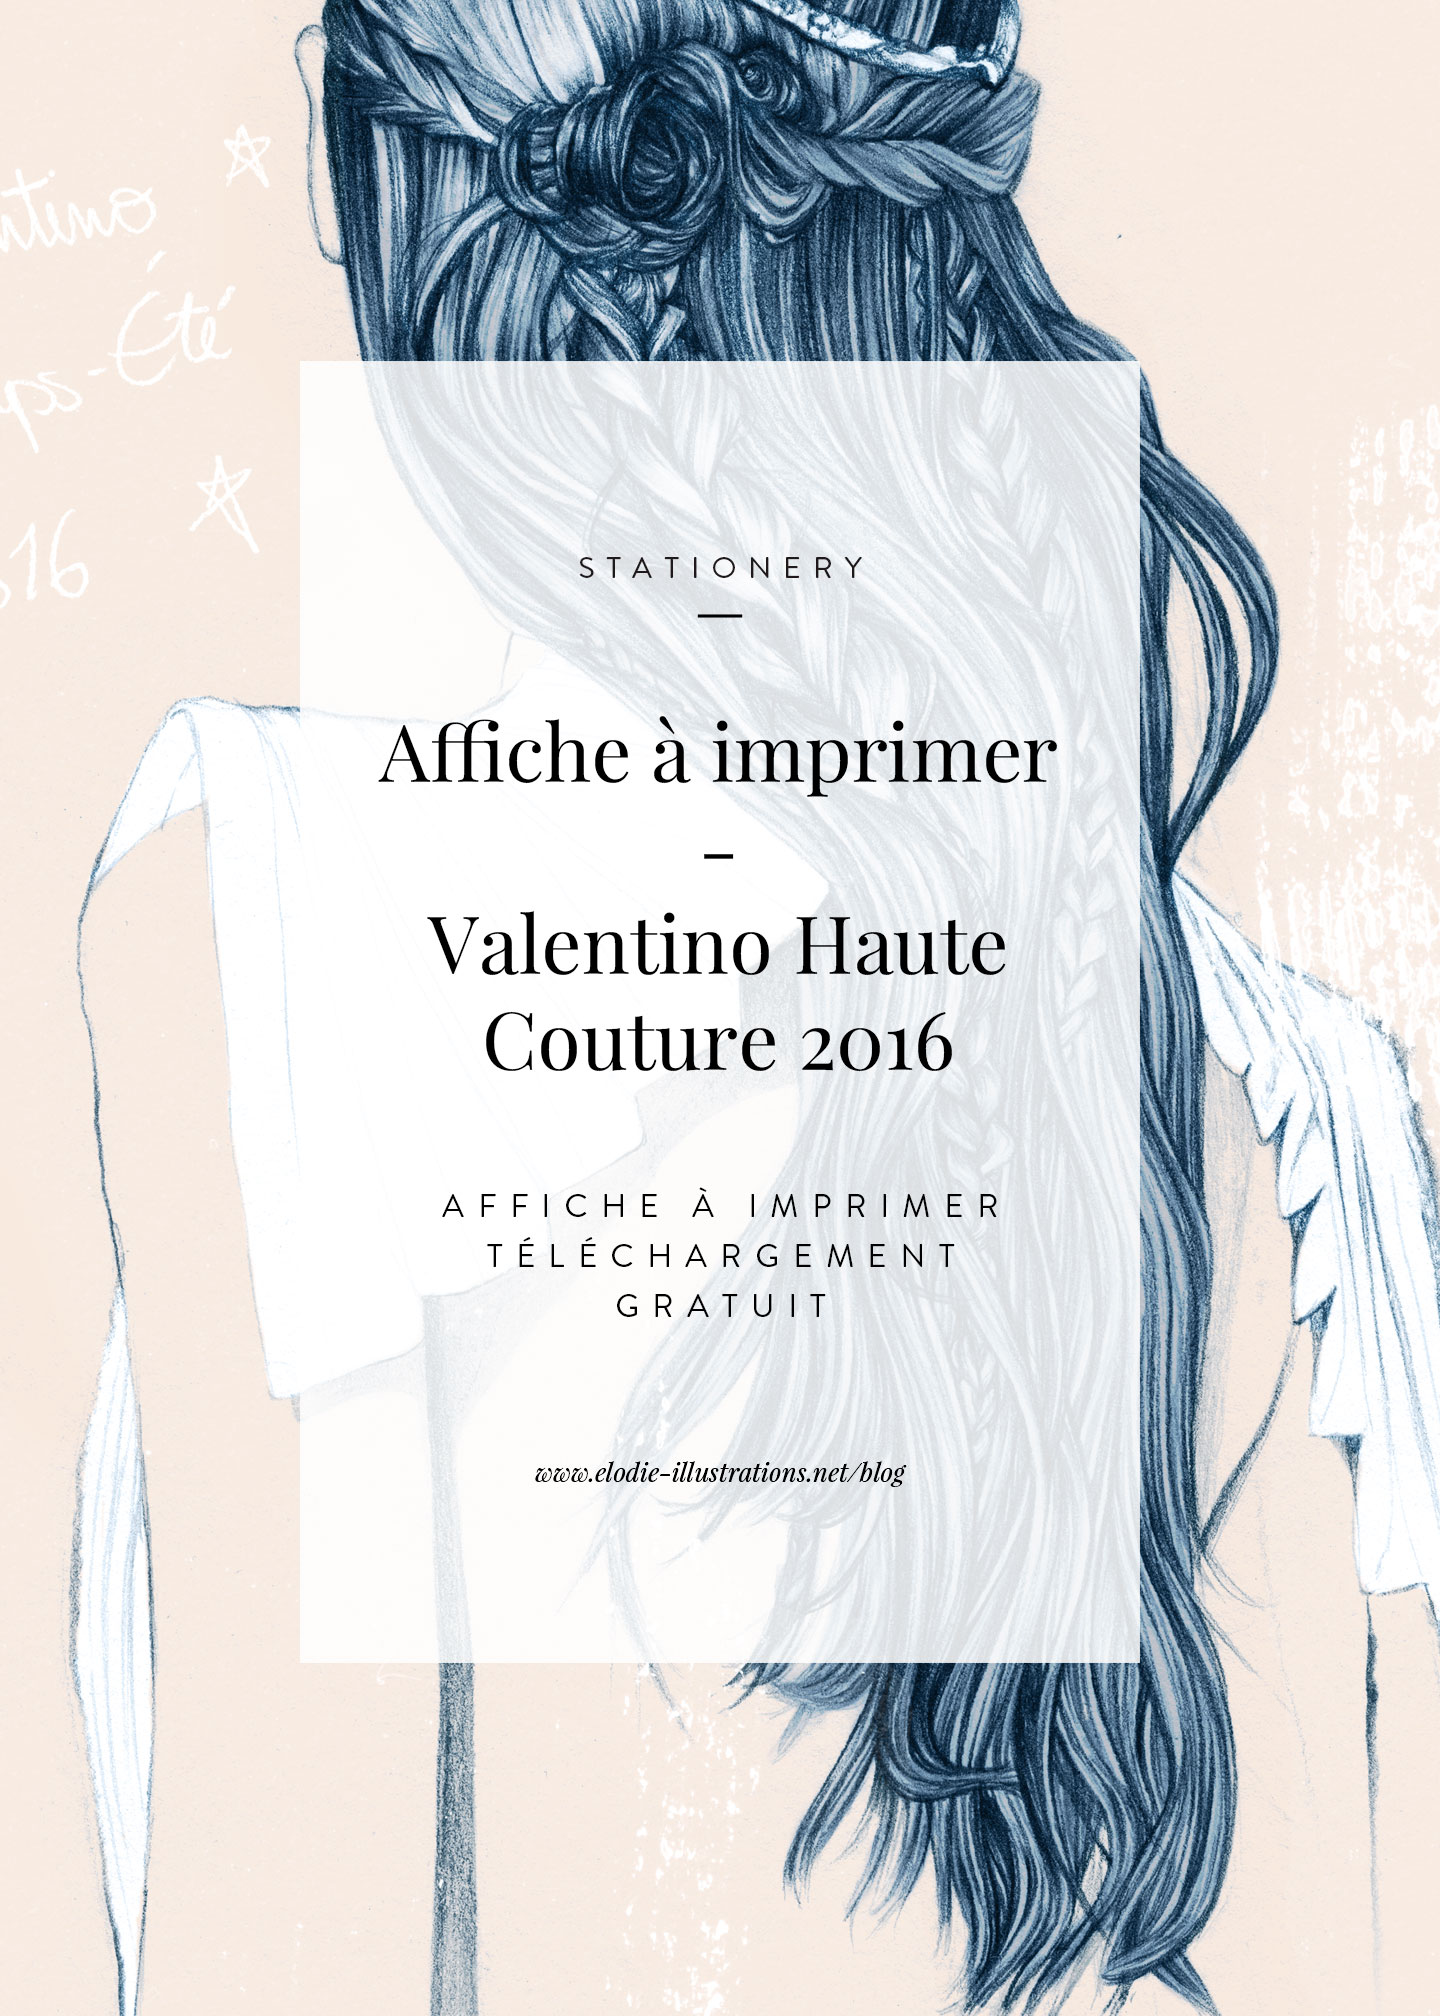 Affiche à imprimer gratuitement - Valentino Printemps-Eté 2016 | Télécharger et imprimer gratuitement cette illustration - Cliquez pour découvrir l'article